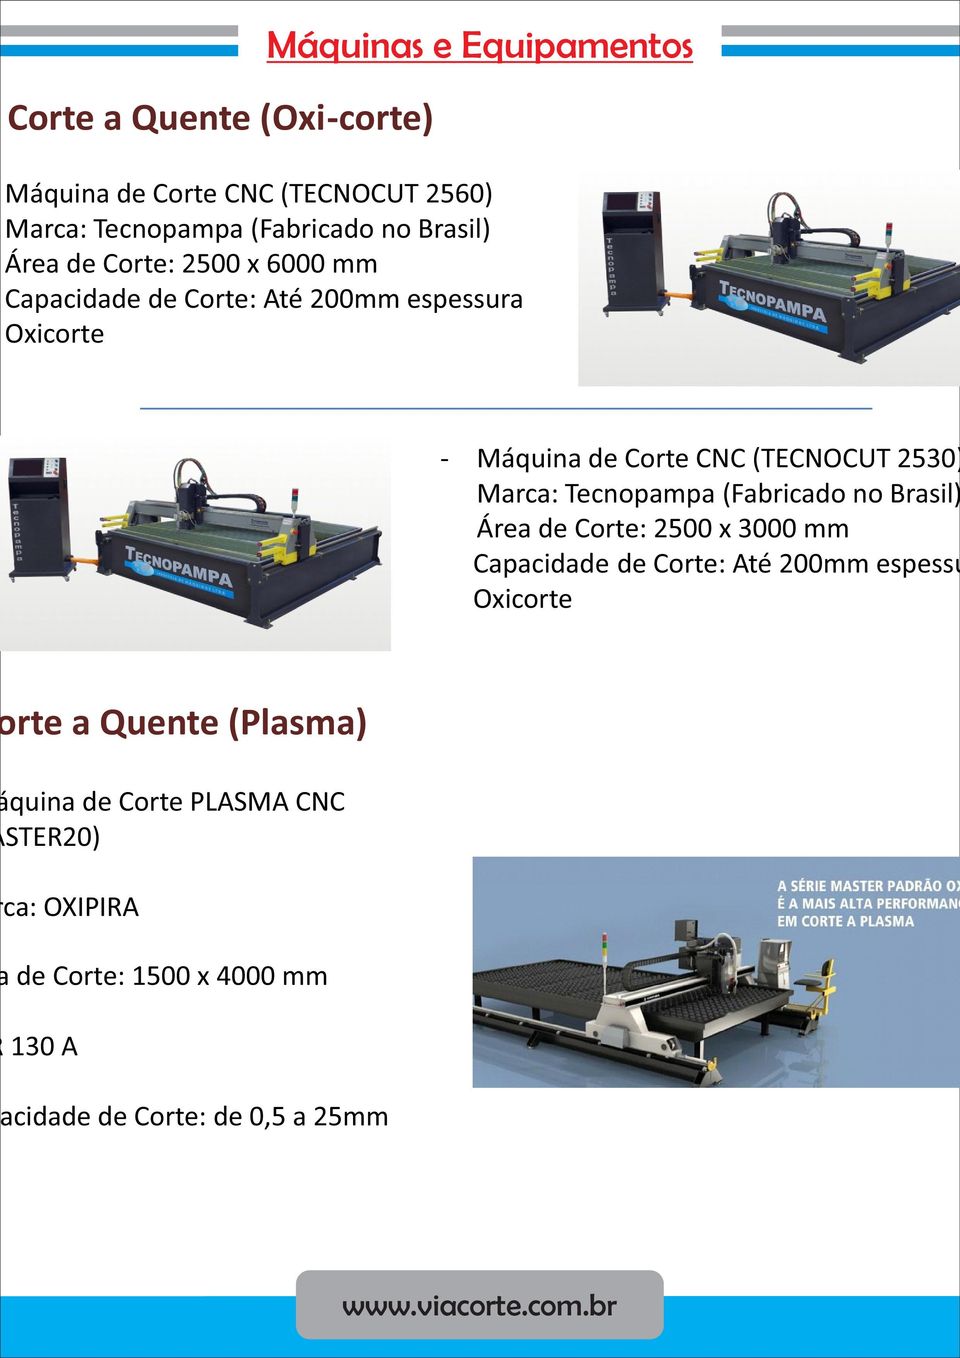 2530) Marca: Tecnopampa (Fabricado no Brasil) Área de Corte: 2500 x 3000 mm Capacidade de Corte: Até 200mm espessu Oxicorte